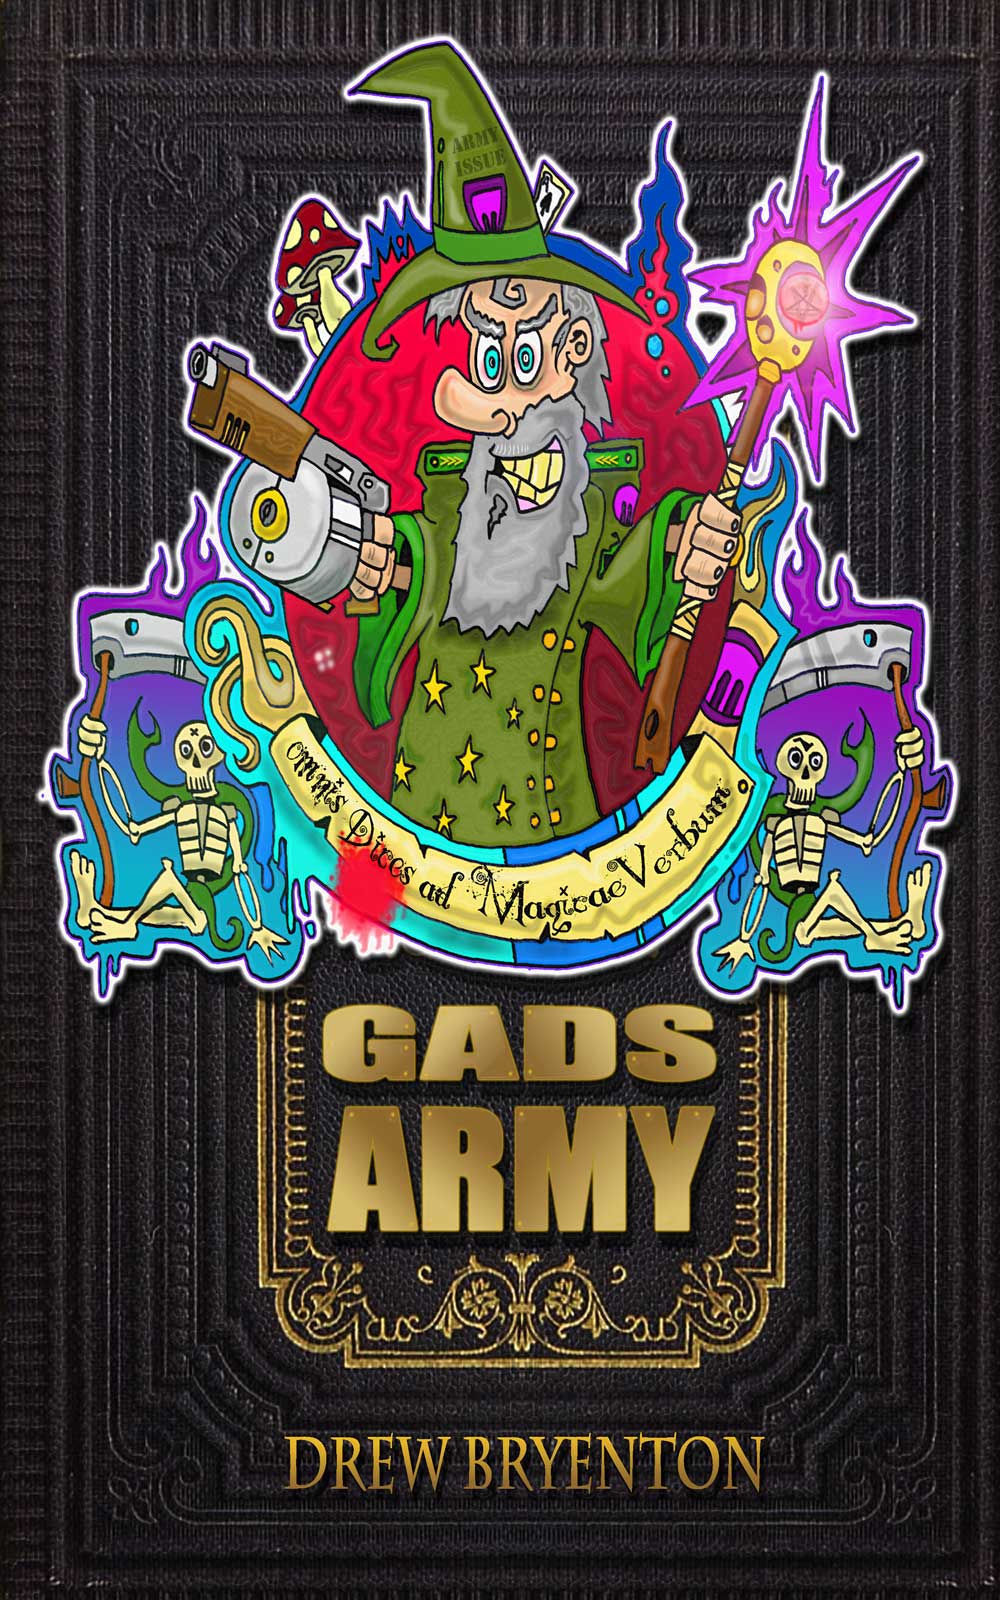 Gad’s Army